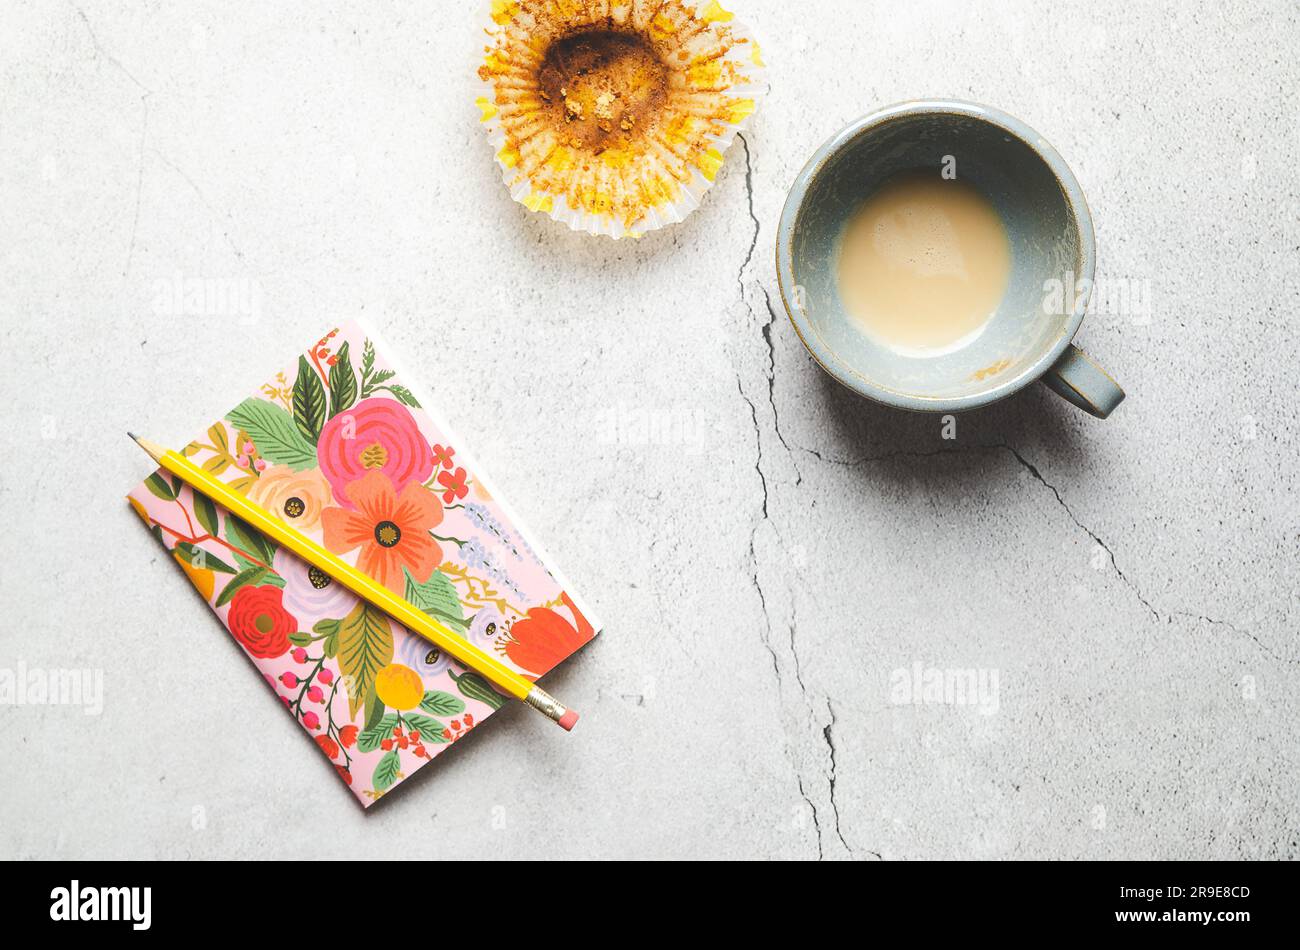 Un notebook fiorito con una matita gialla, una tazza vuota di latte e una tazza da forno, su sfondo grigio. Foto Stock